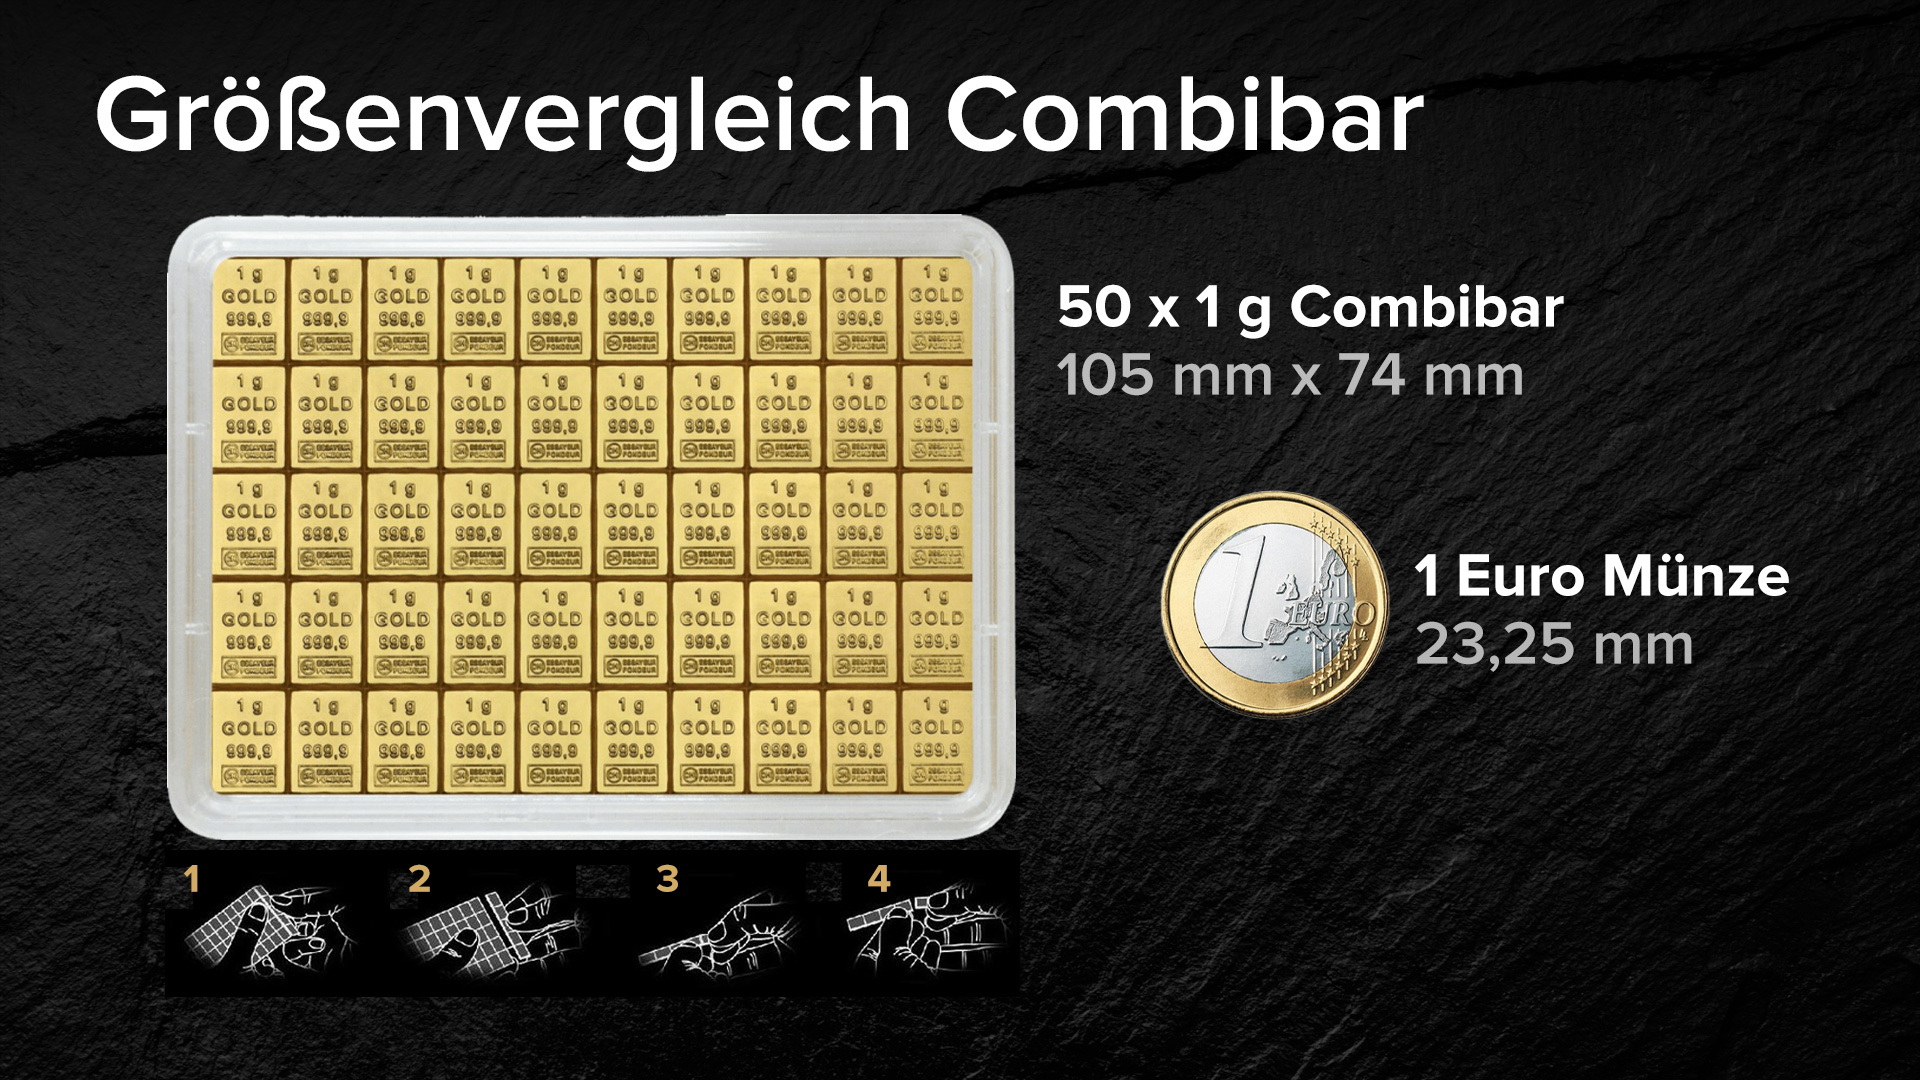 Size comparison combibar